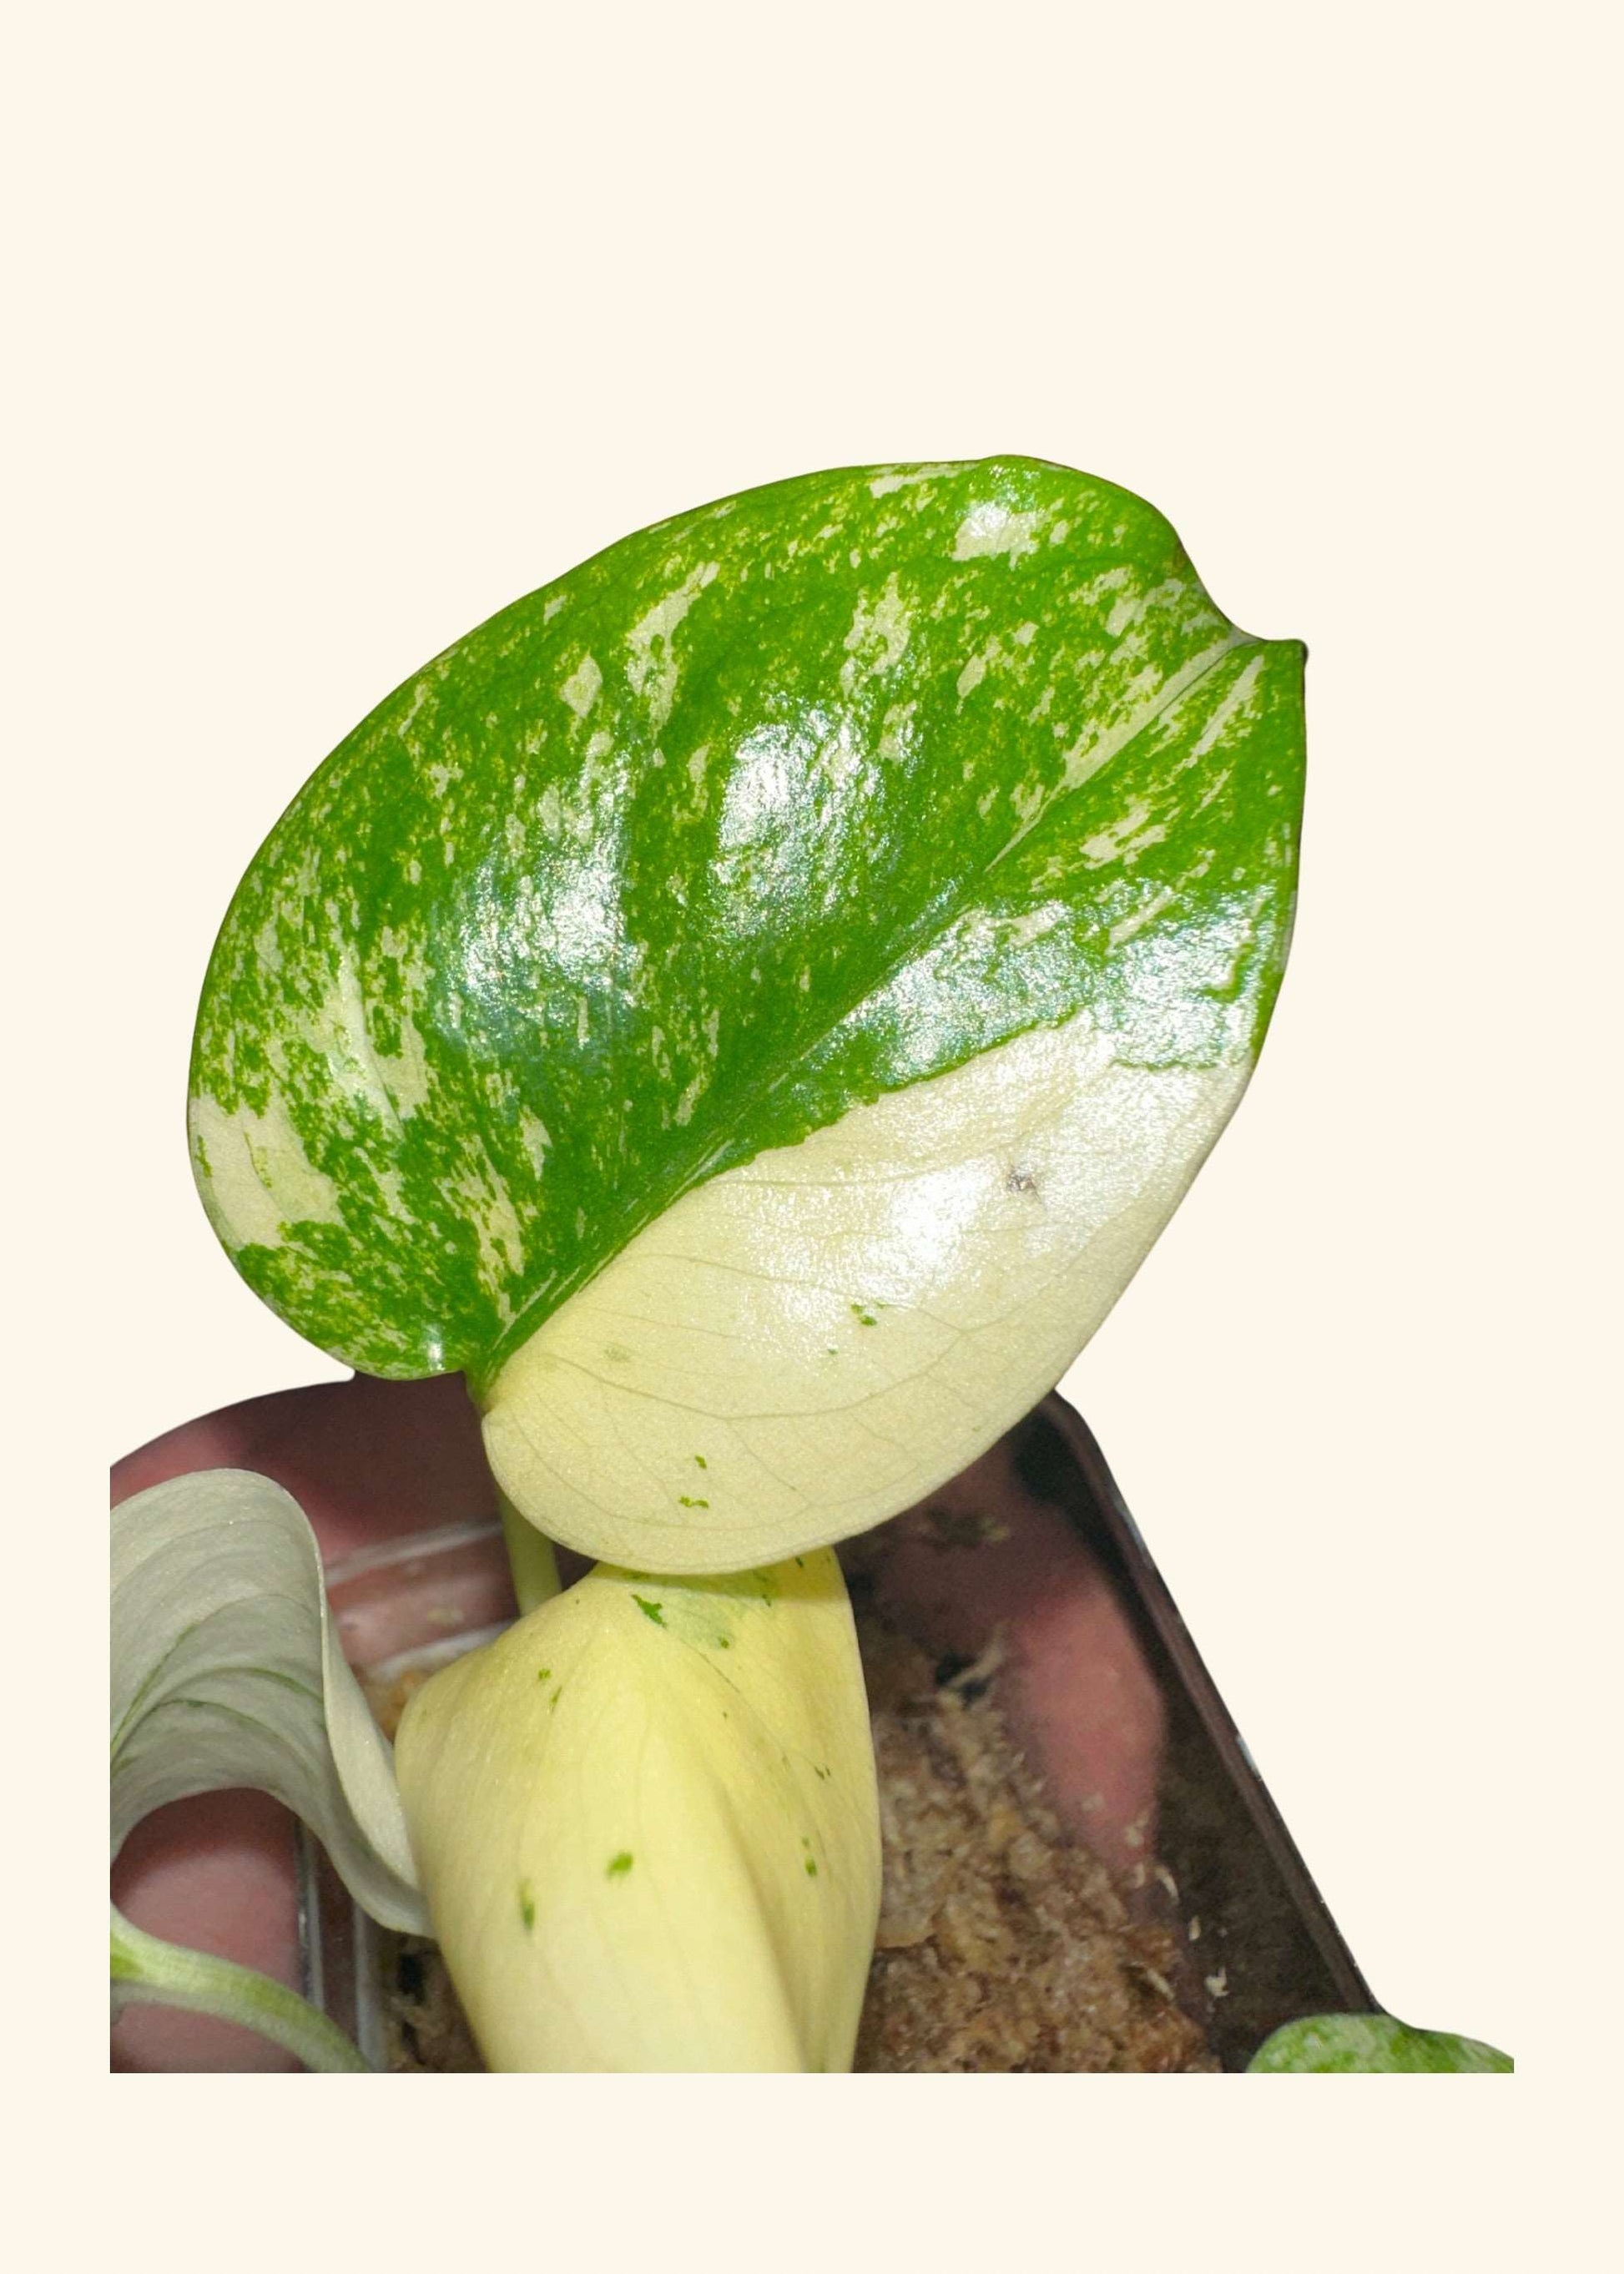 Monstera deliciosa variegata ‘Mint’ (VERY RARE)